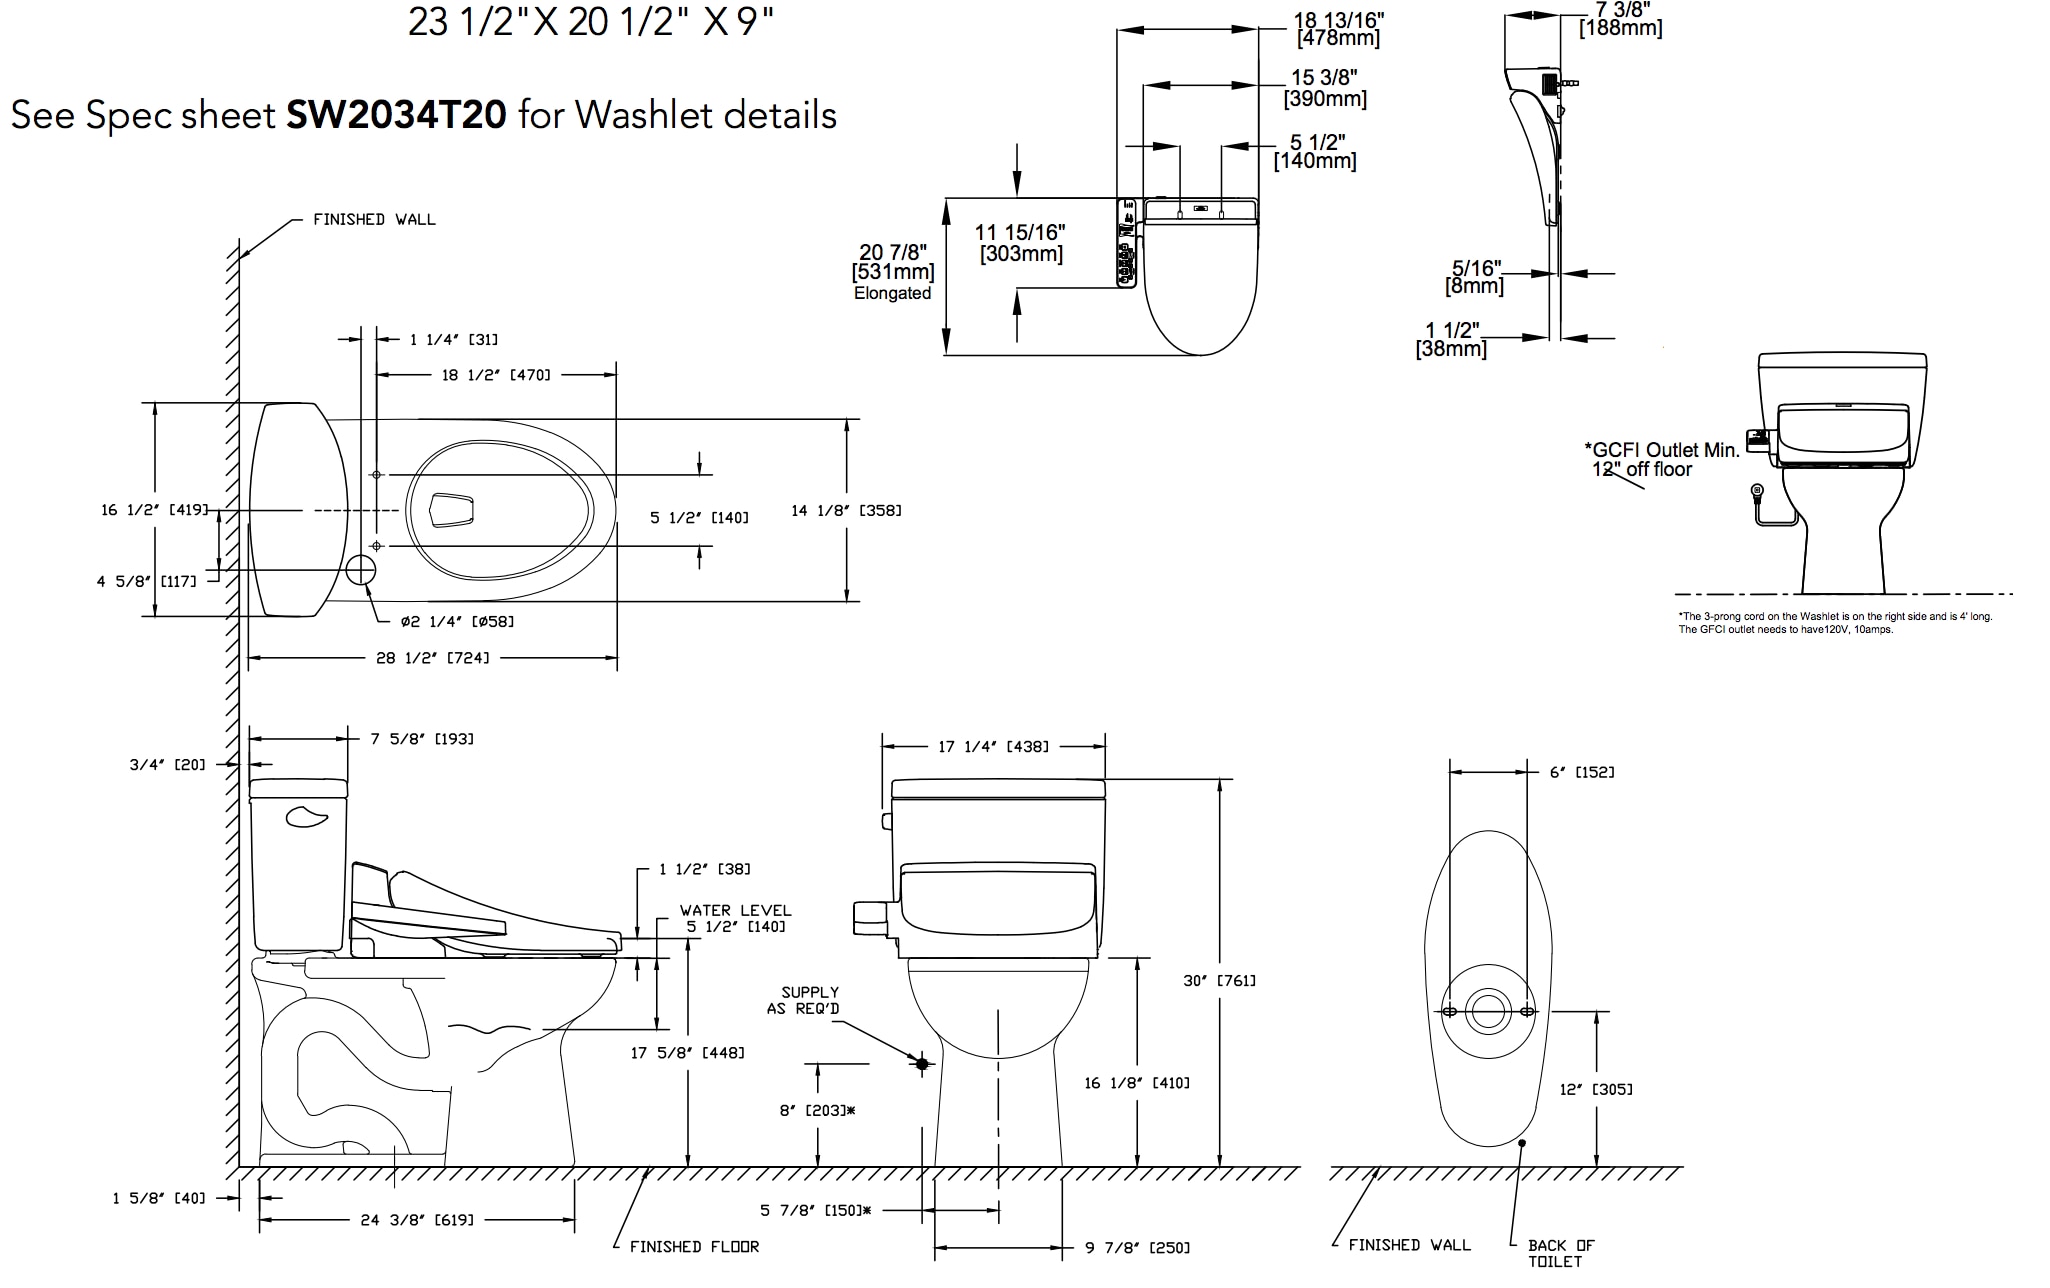 drake-ii-washlet-c100-two-piece-toilet-1.28-gpf-diagram.png